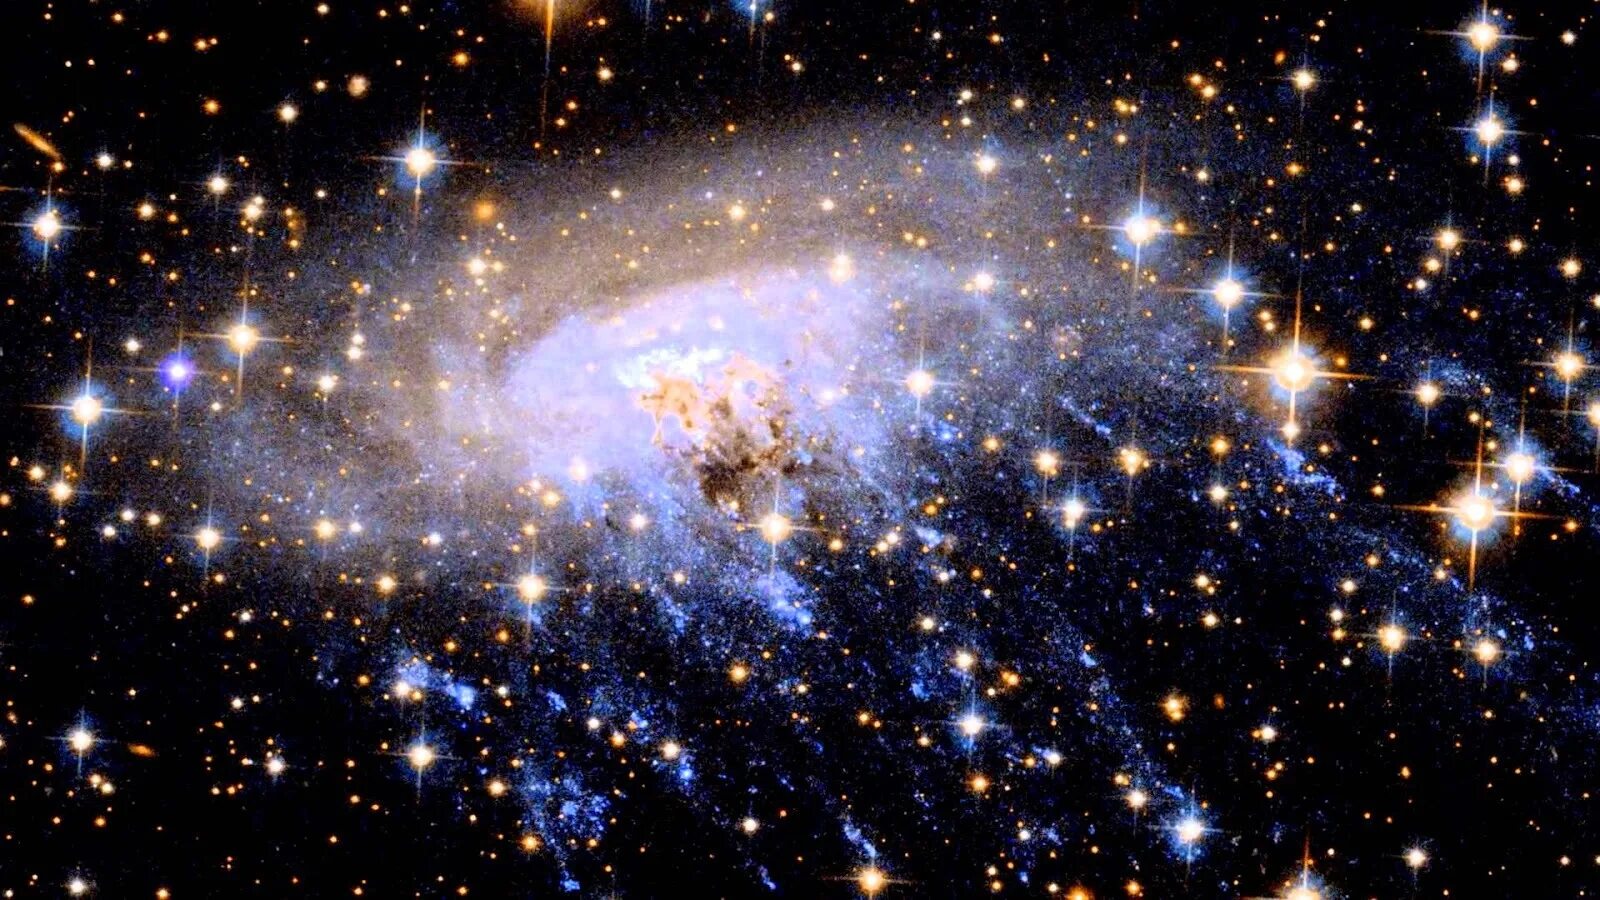 Космоса и именно им. Галактика eso 137-001. Космическая медуза Галактика. Галактики во Вселенной. Фото Вселенной.